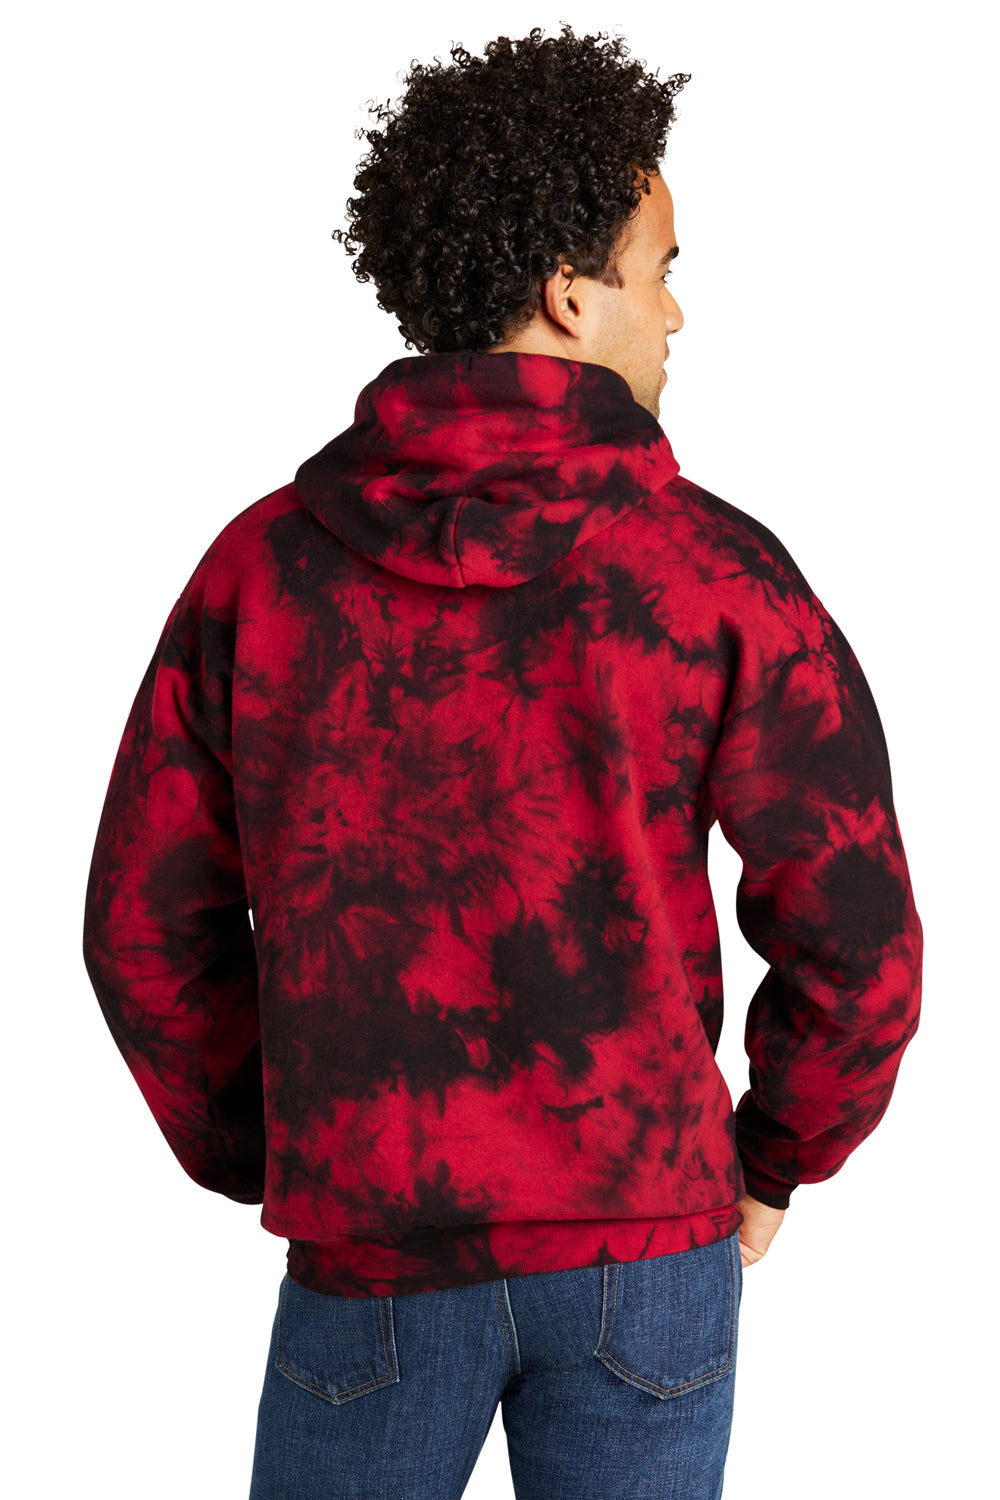 Port & Company PC144 Crystal Tie-Dye Hooded Sweatshirt Hoodie Black/Red Back